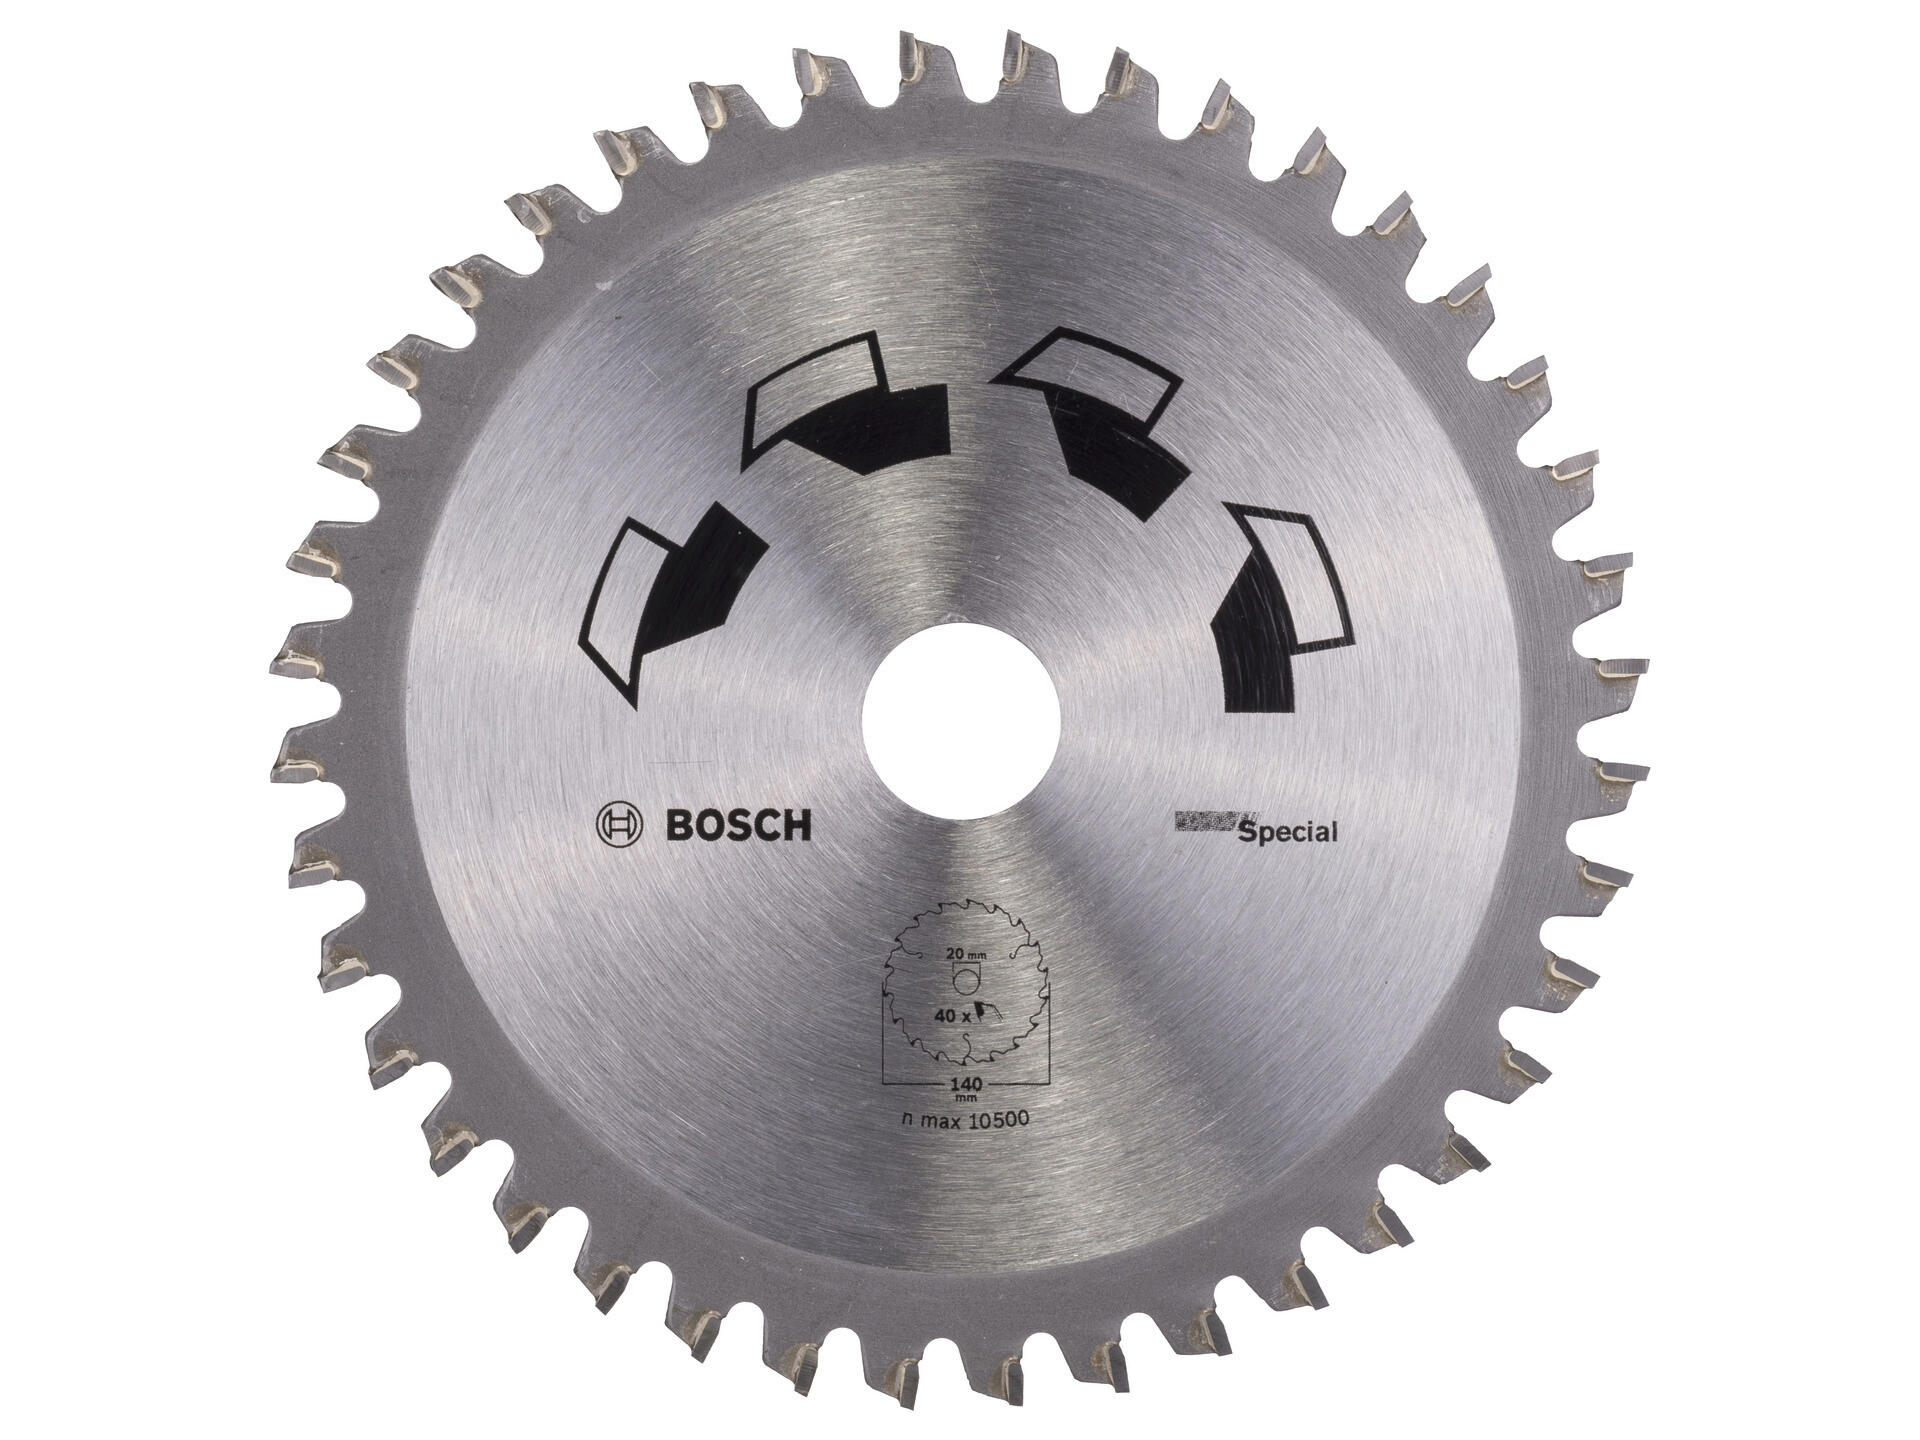 Bosch Special cirkelzaagblad 140mm 40T hout